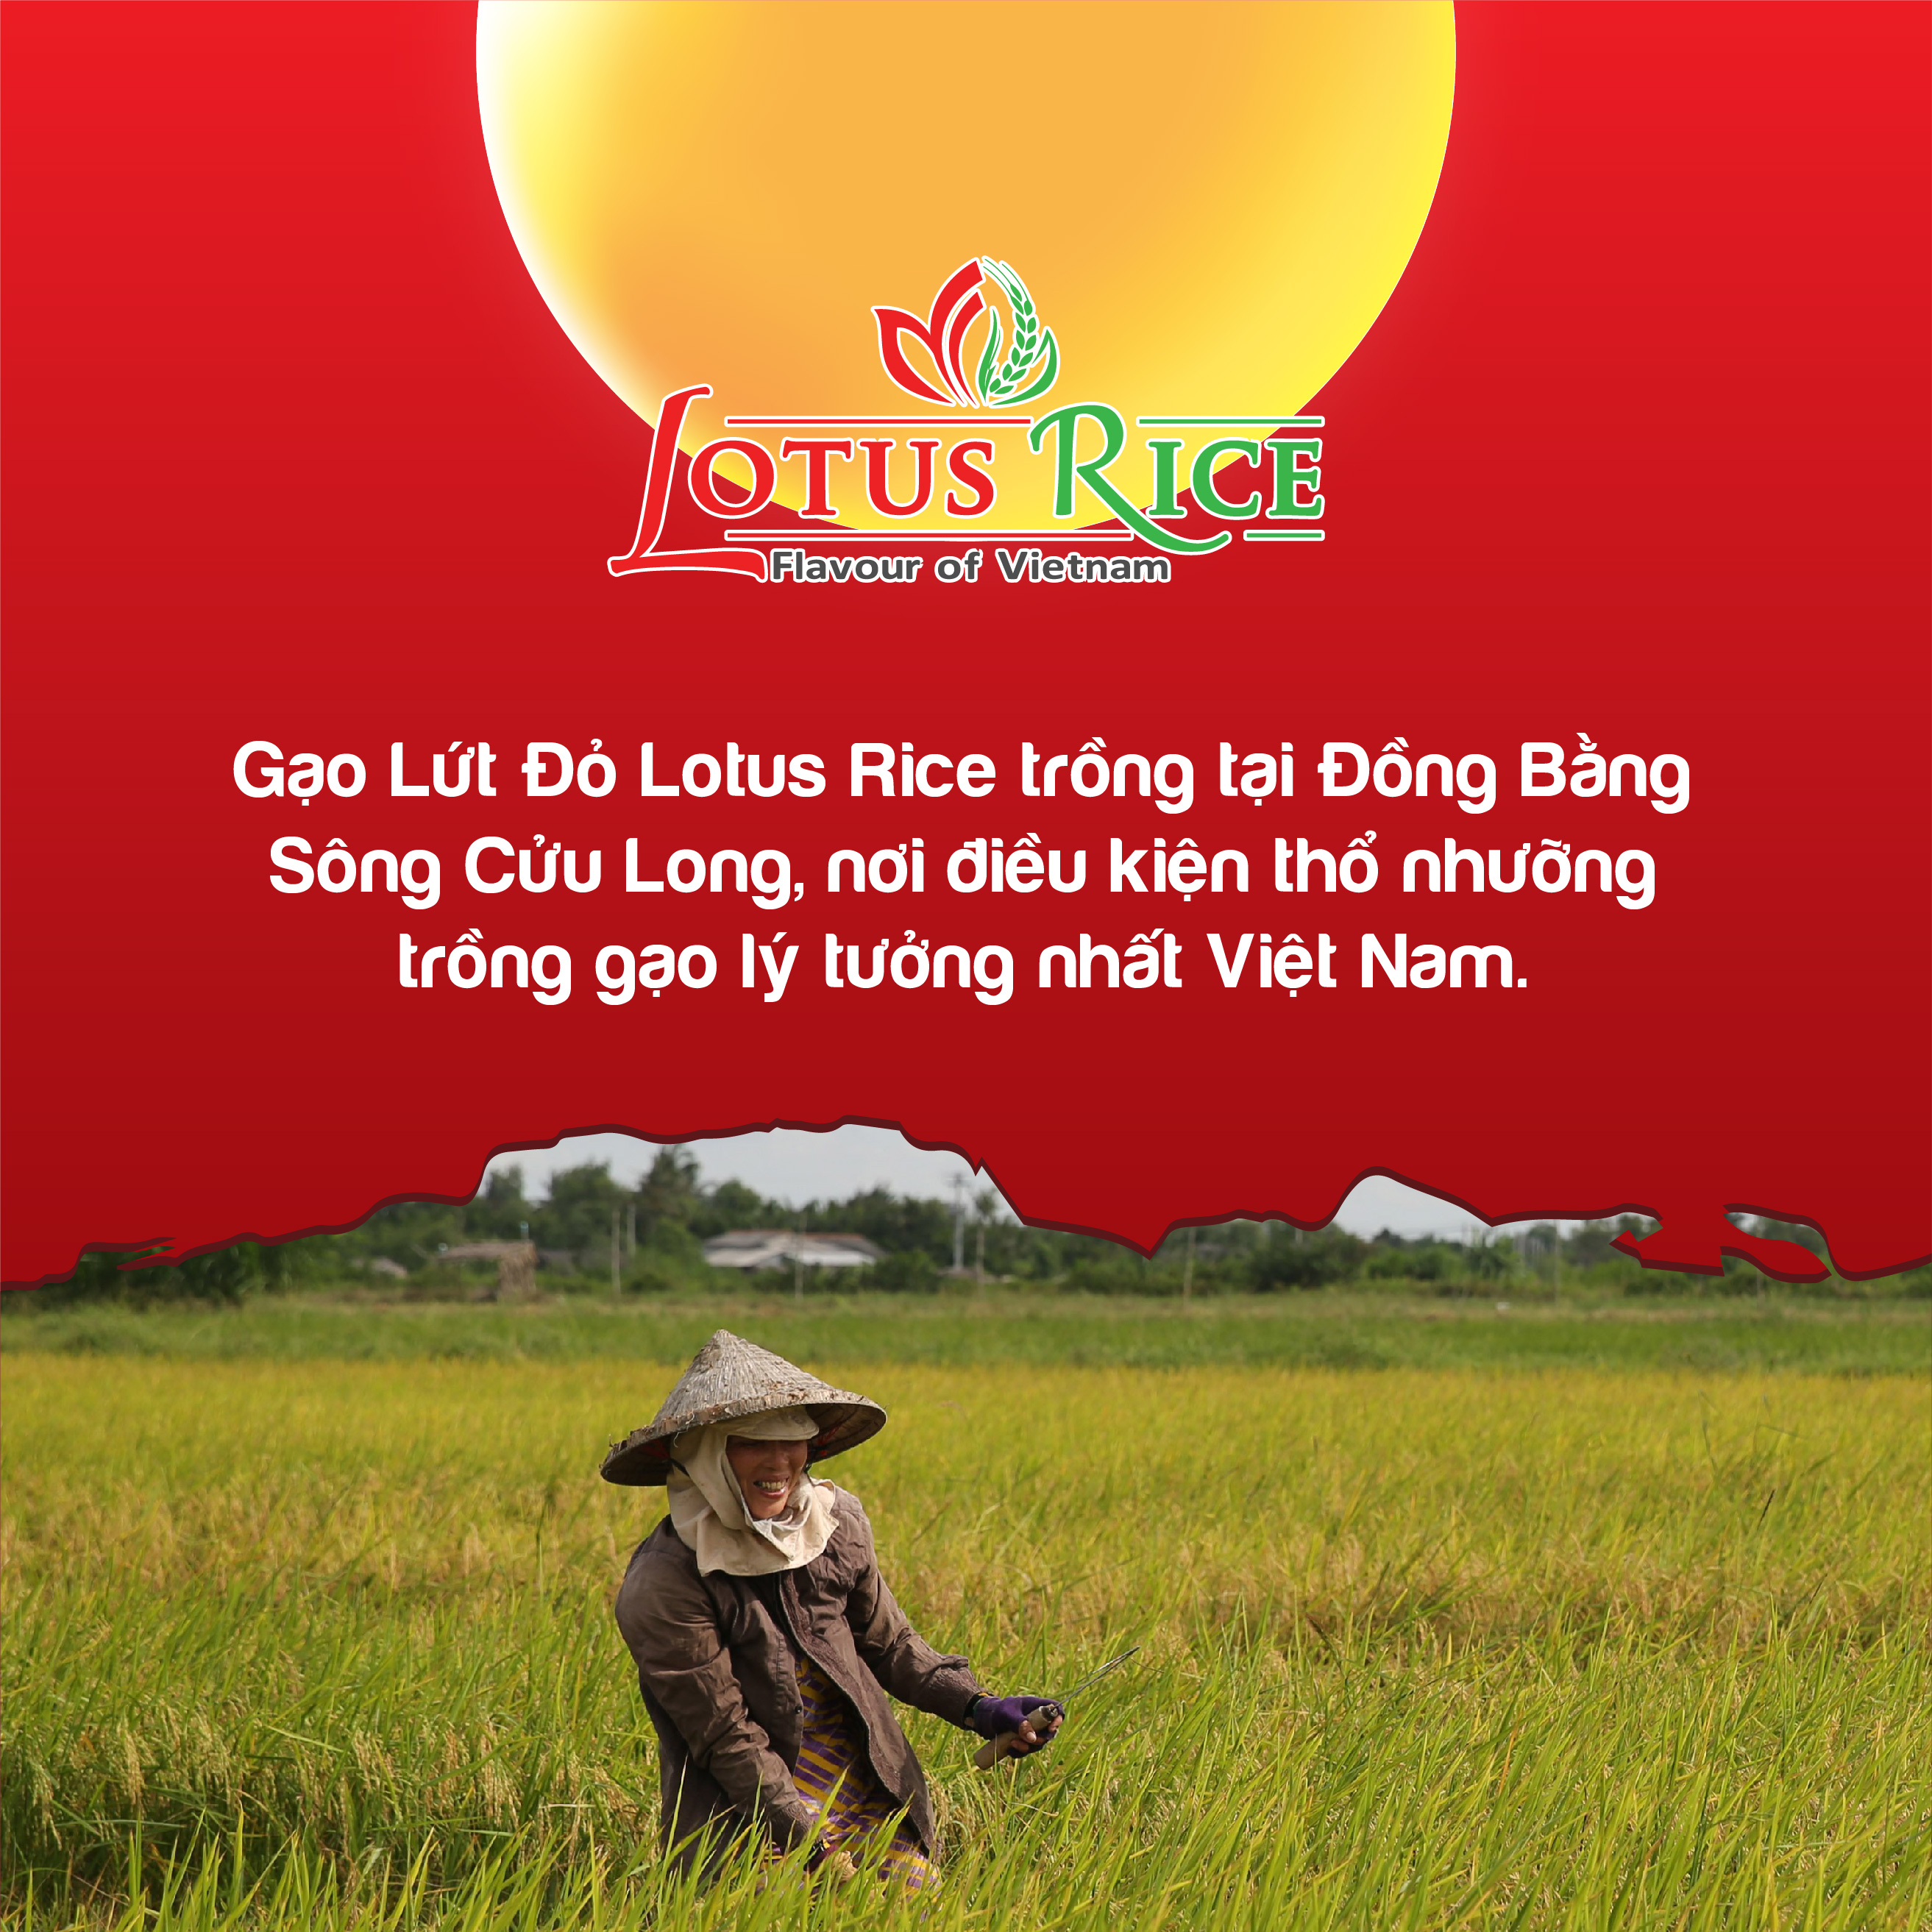 Gạo Lứt Đỏ Lotus Rice 1kg - Tốt cho người ăn giảm cân - Dễ ăn dễ nấu